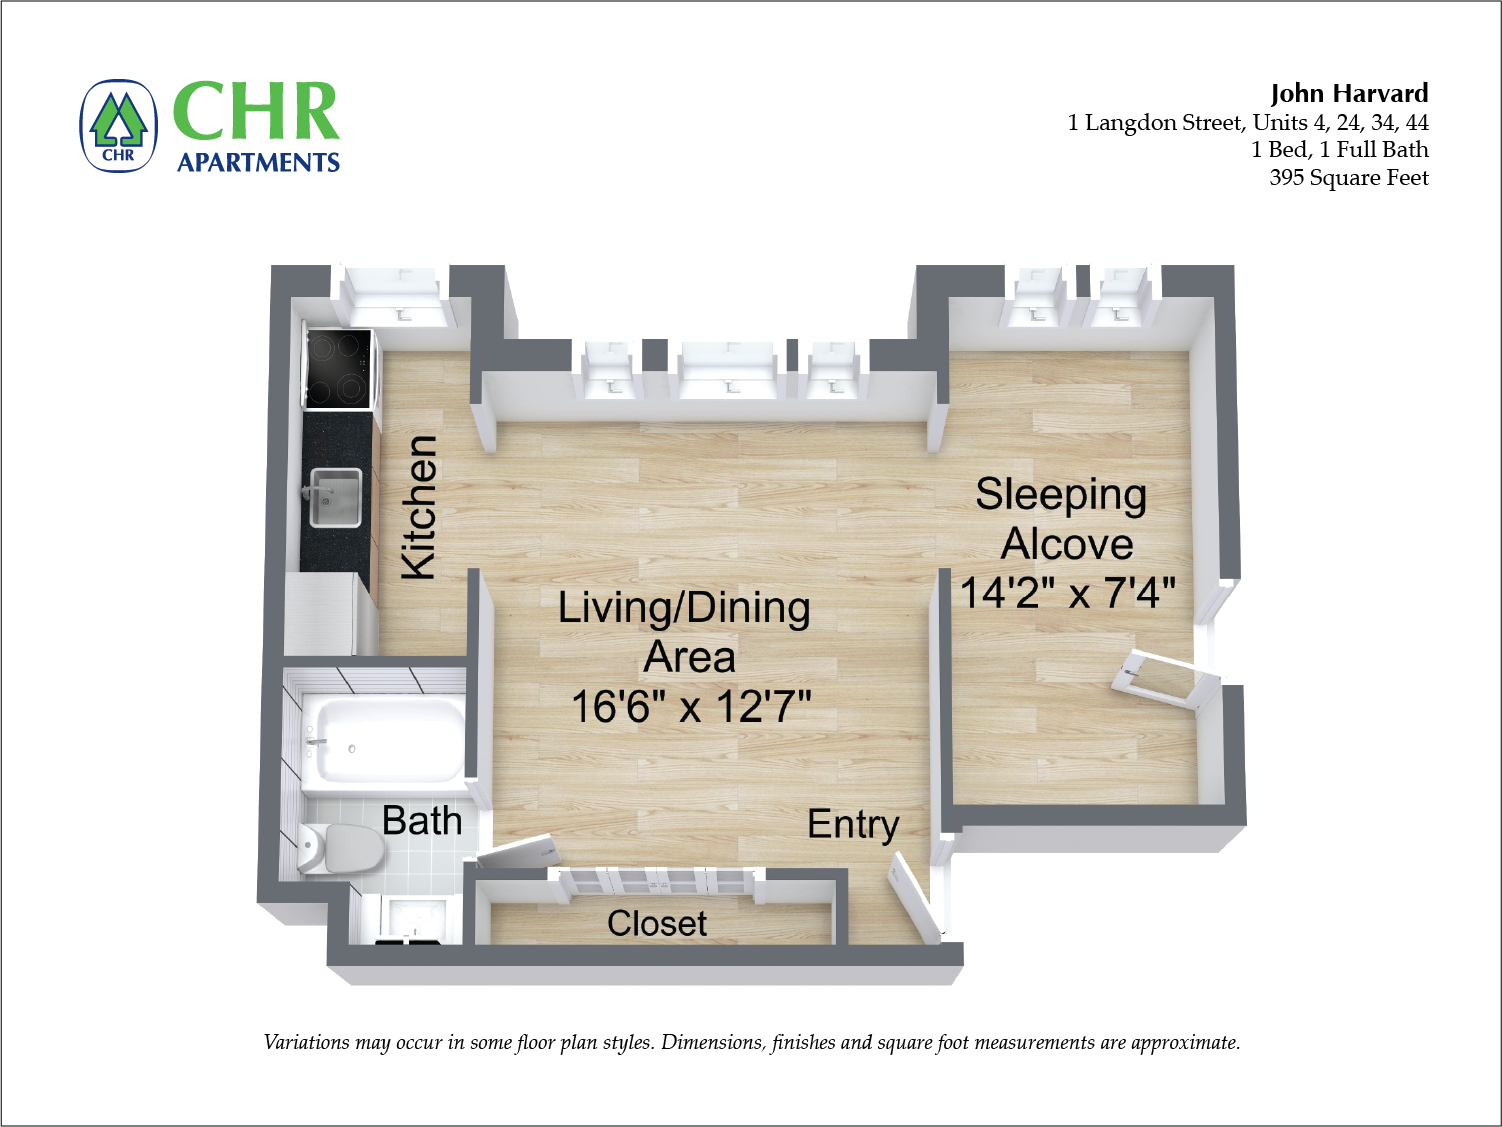 Click to view Floor plan John Harvard - 1 Bedroom image 1